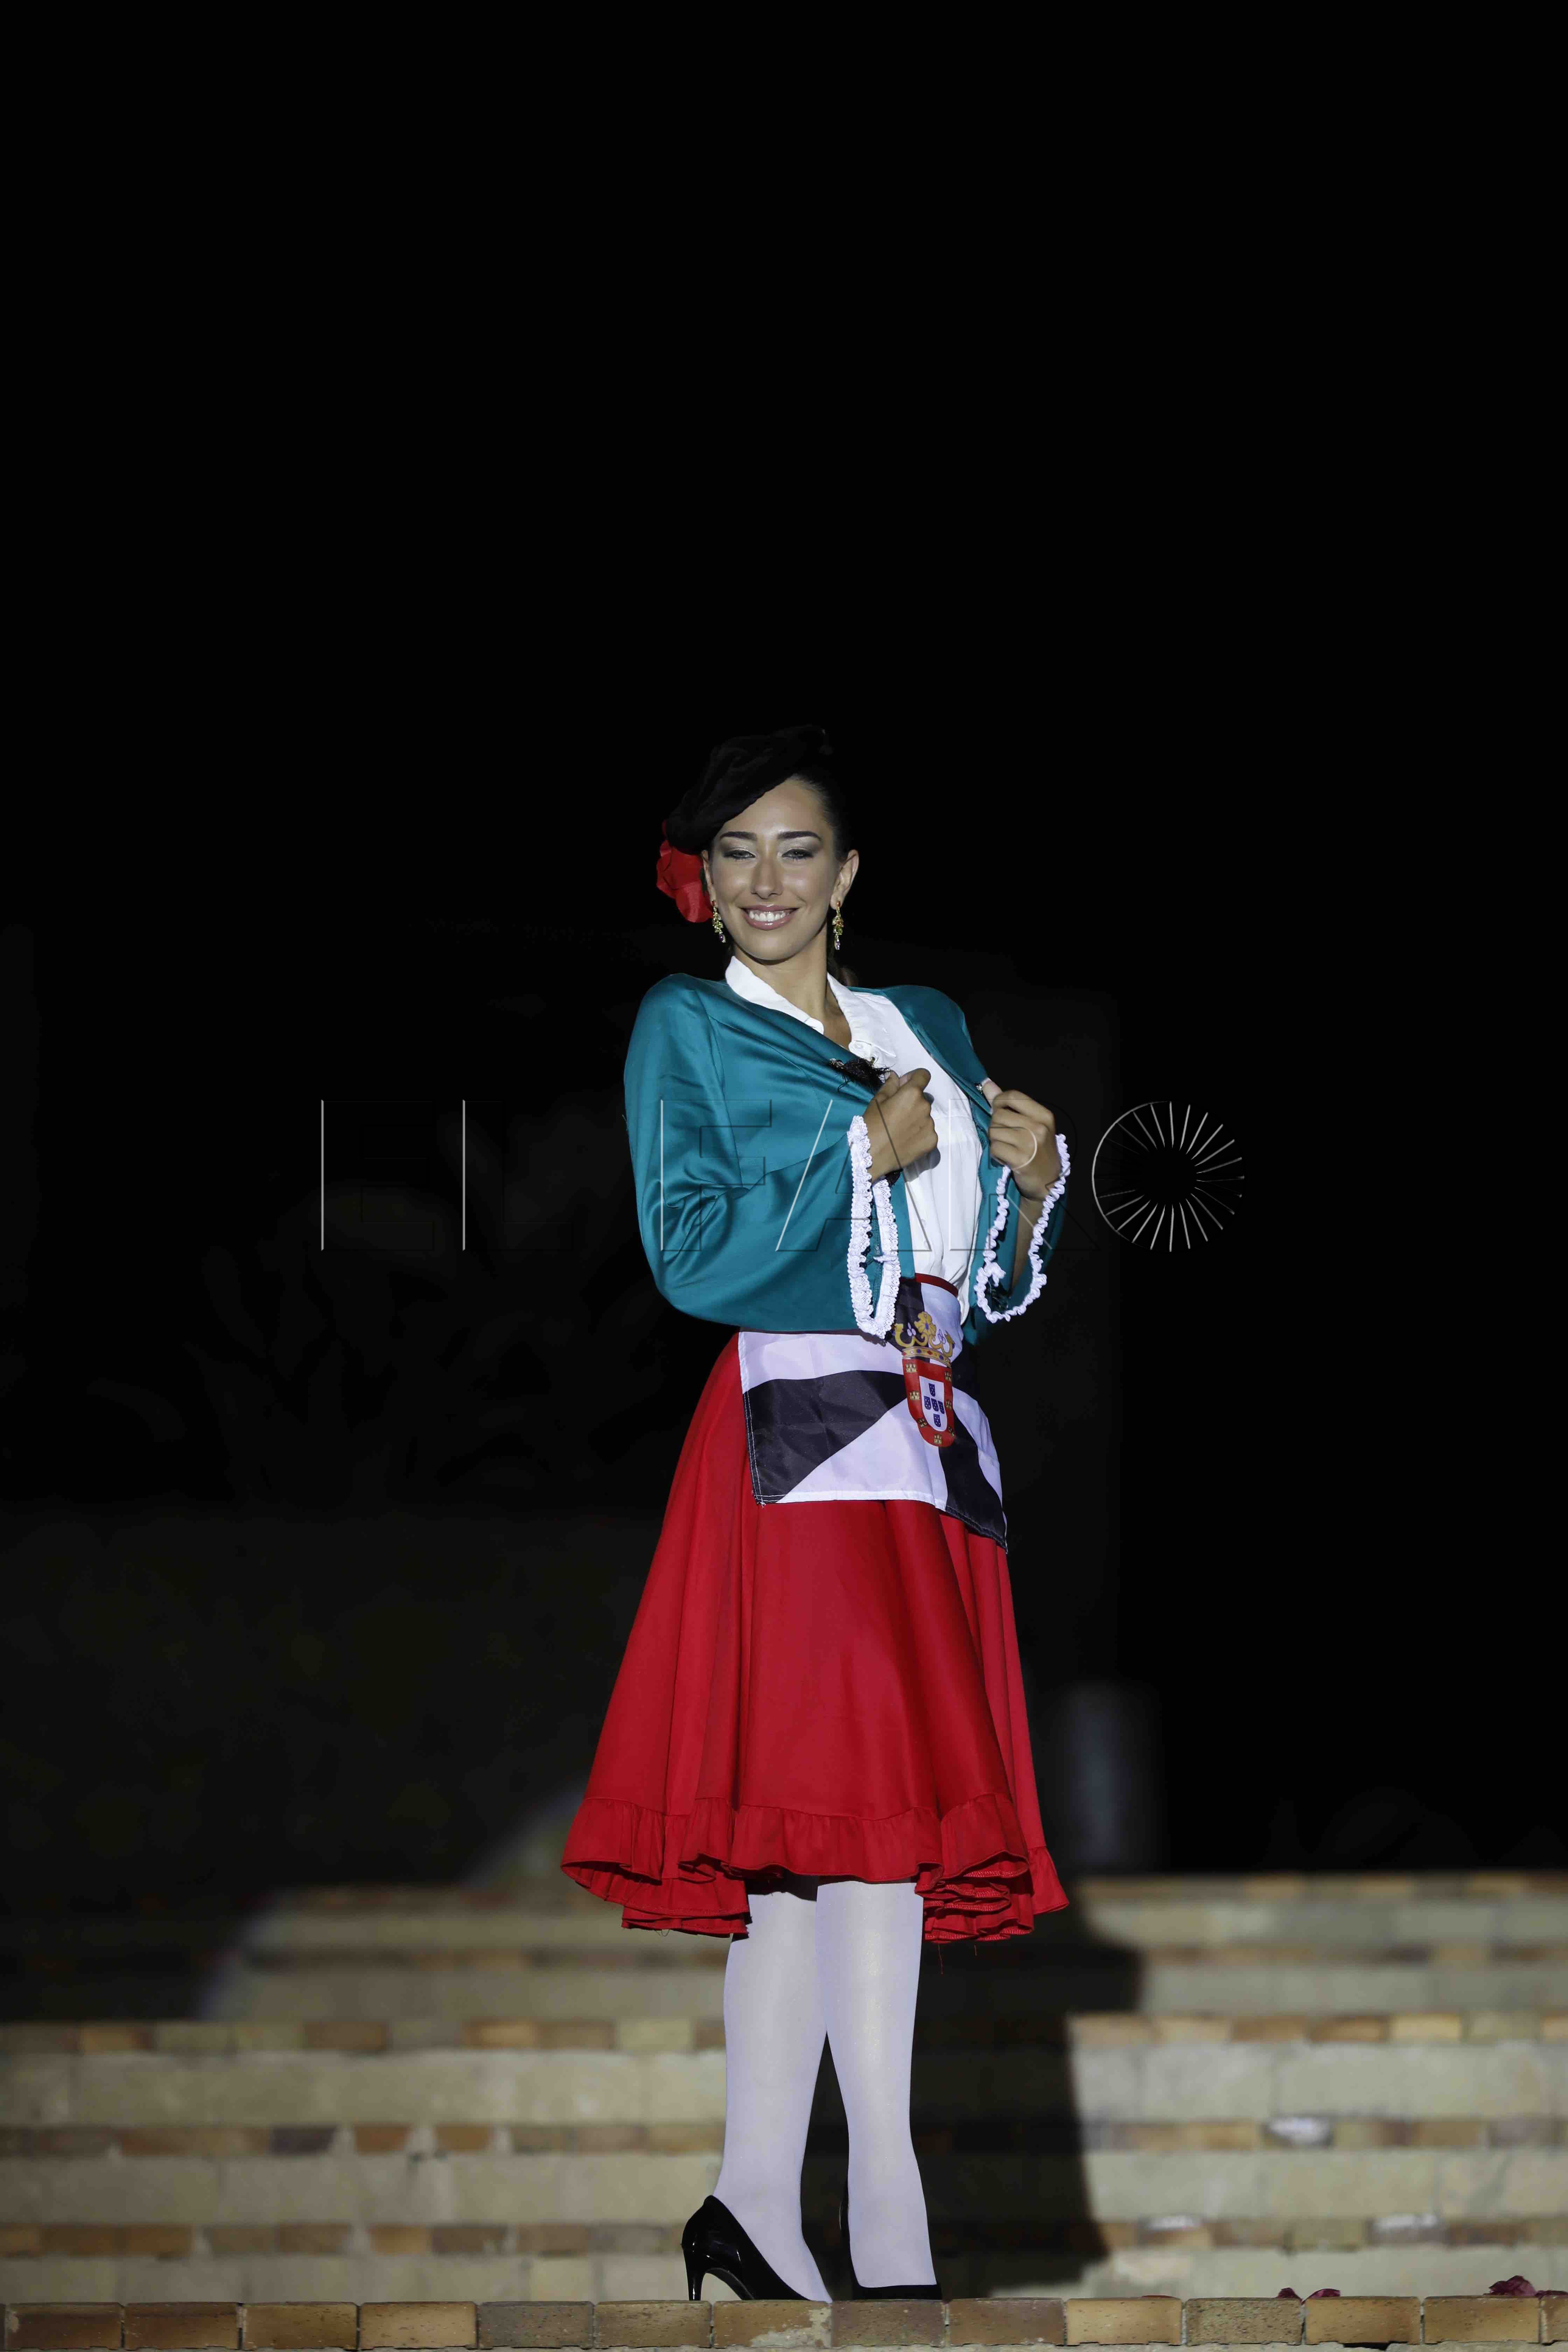 Sara Martínez representó a Ceuta en la noche los trajes regionales